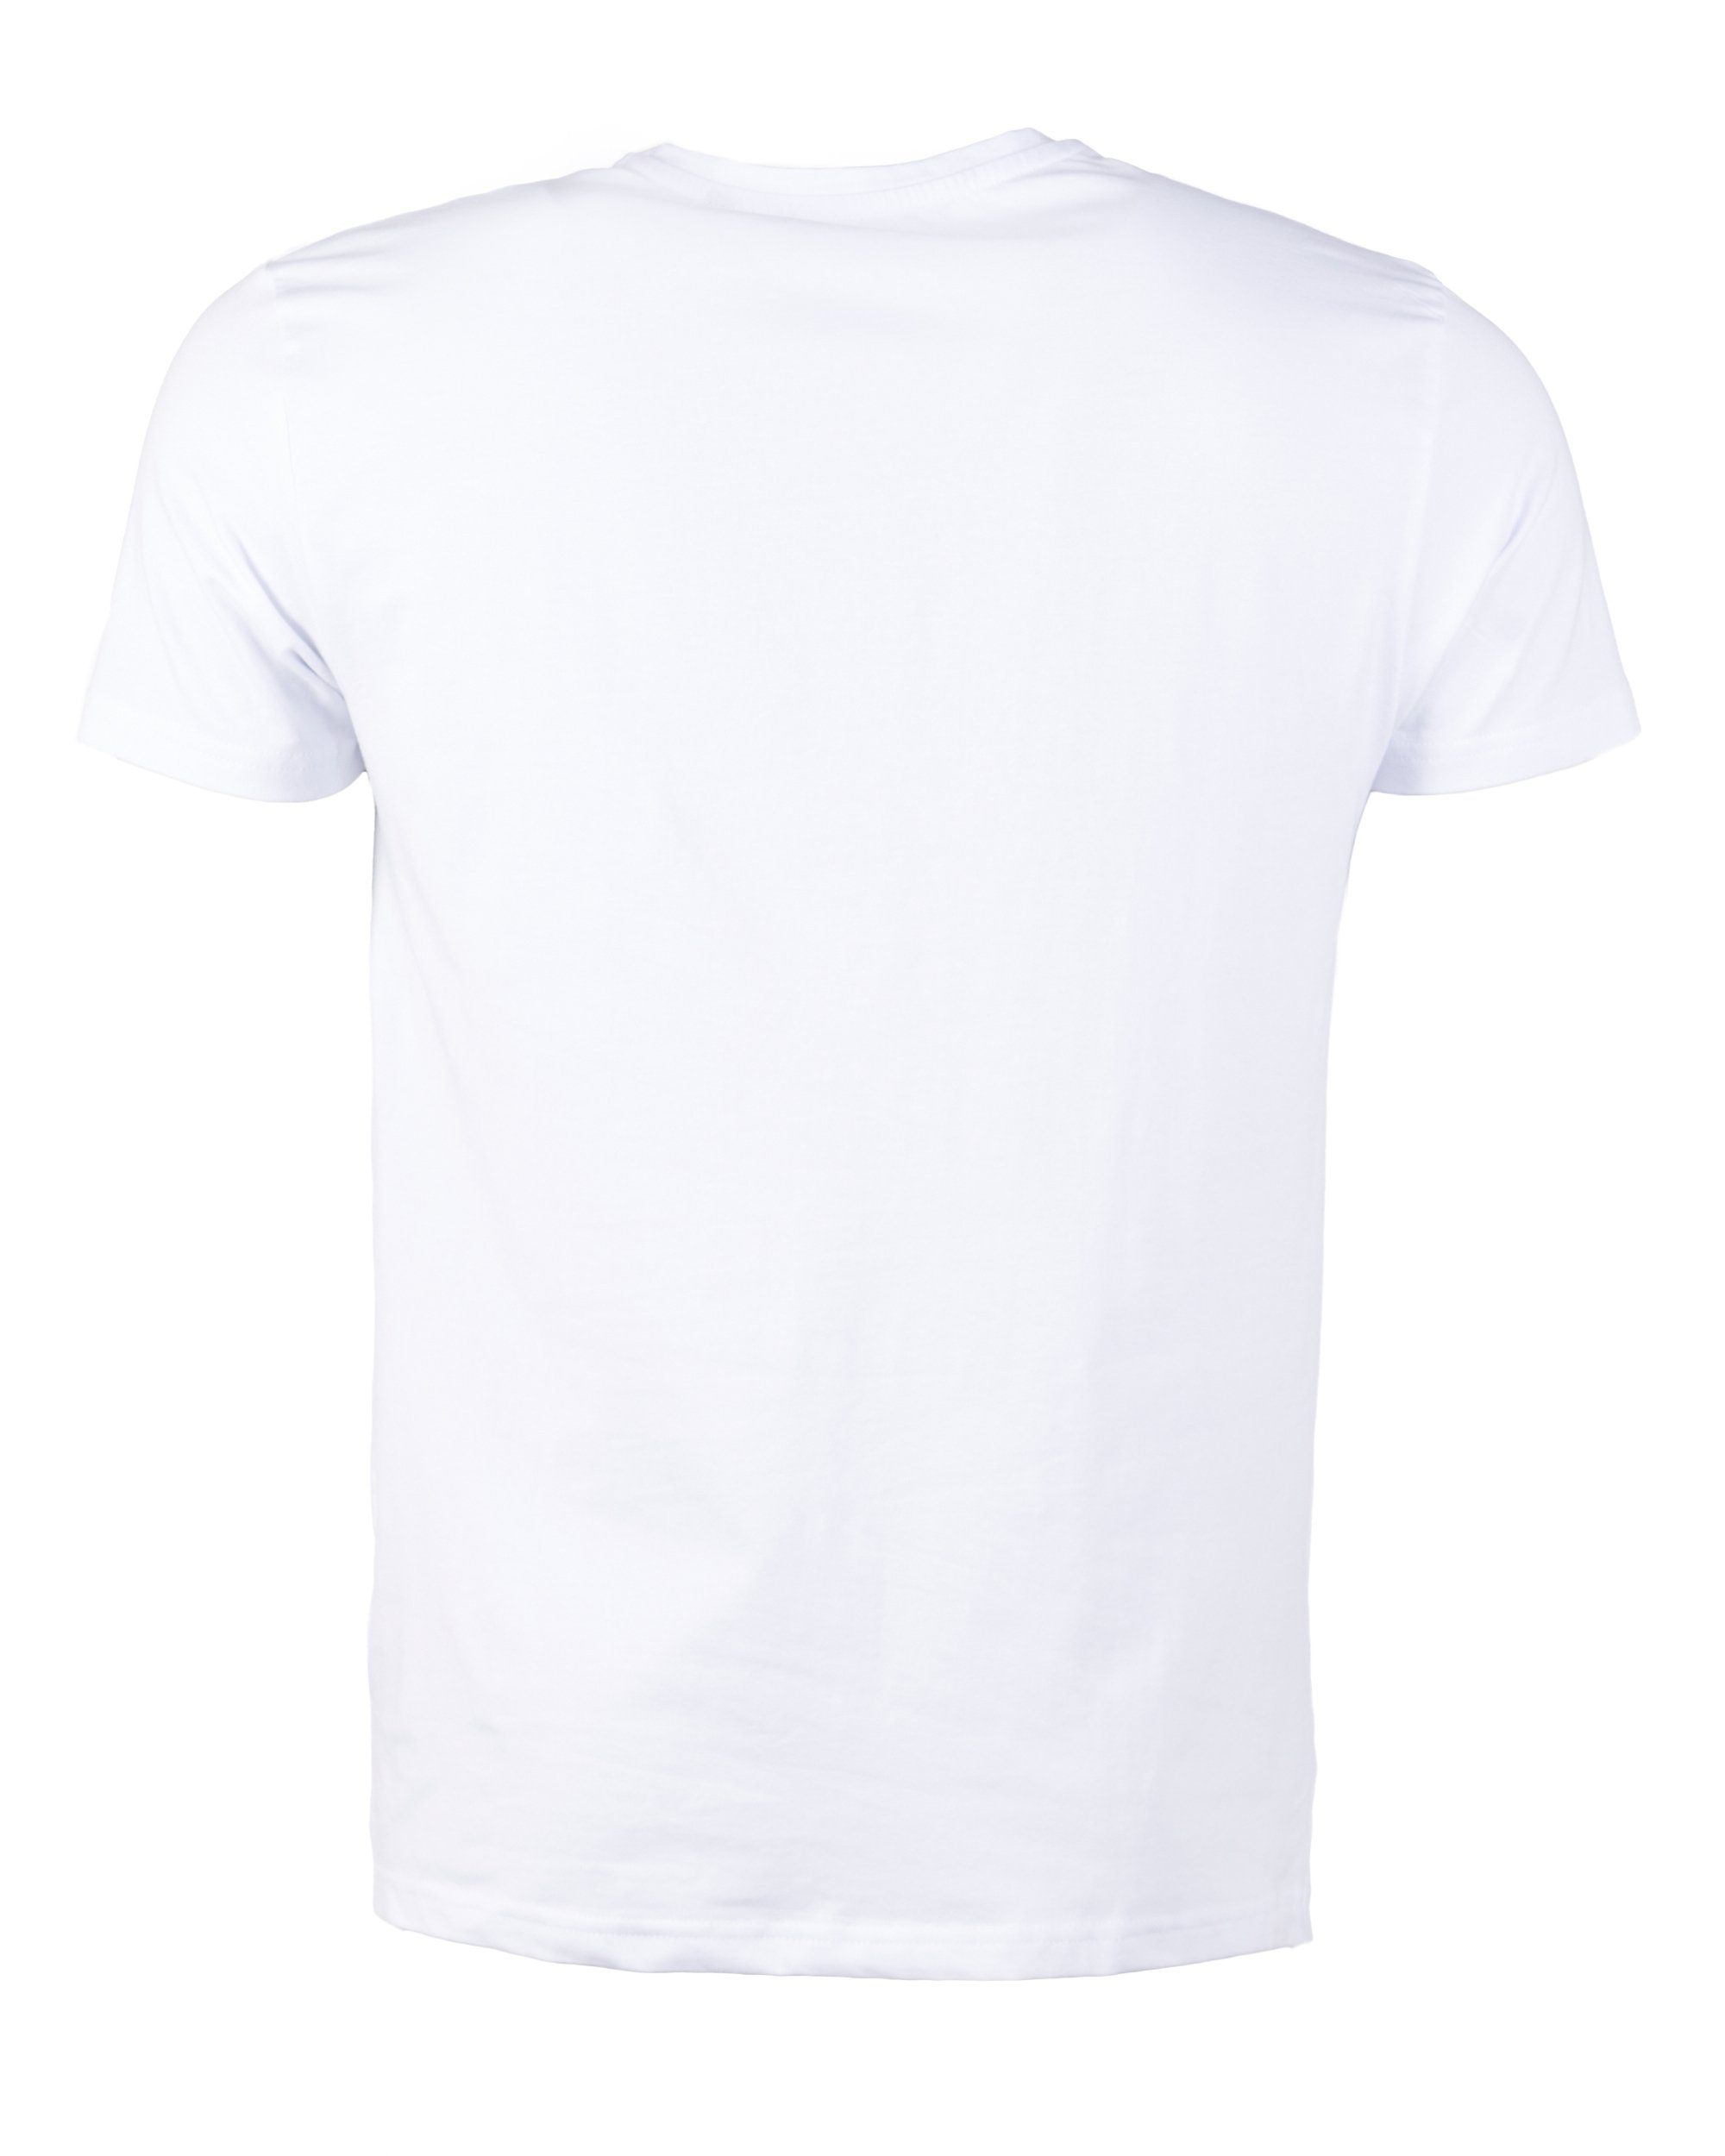 GUN Bling4U T-Shirt white TOP TG20193017